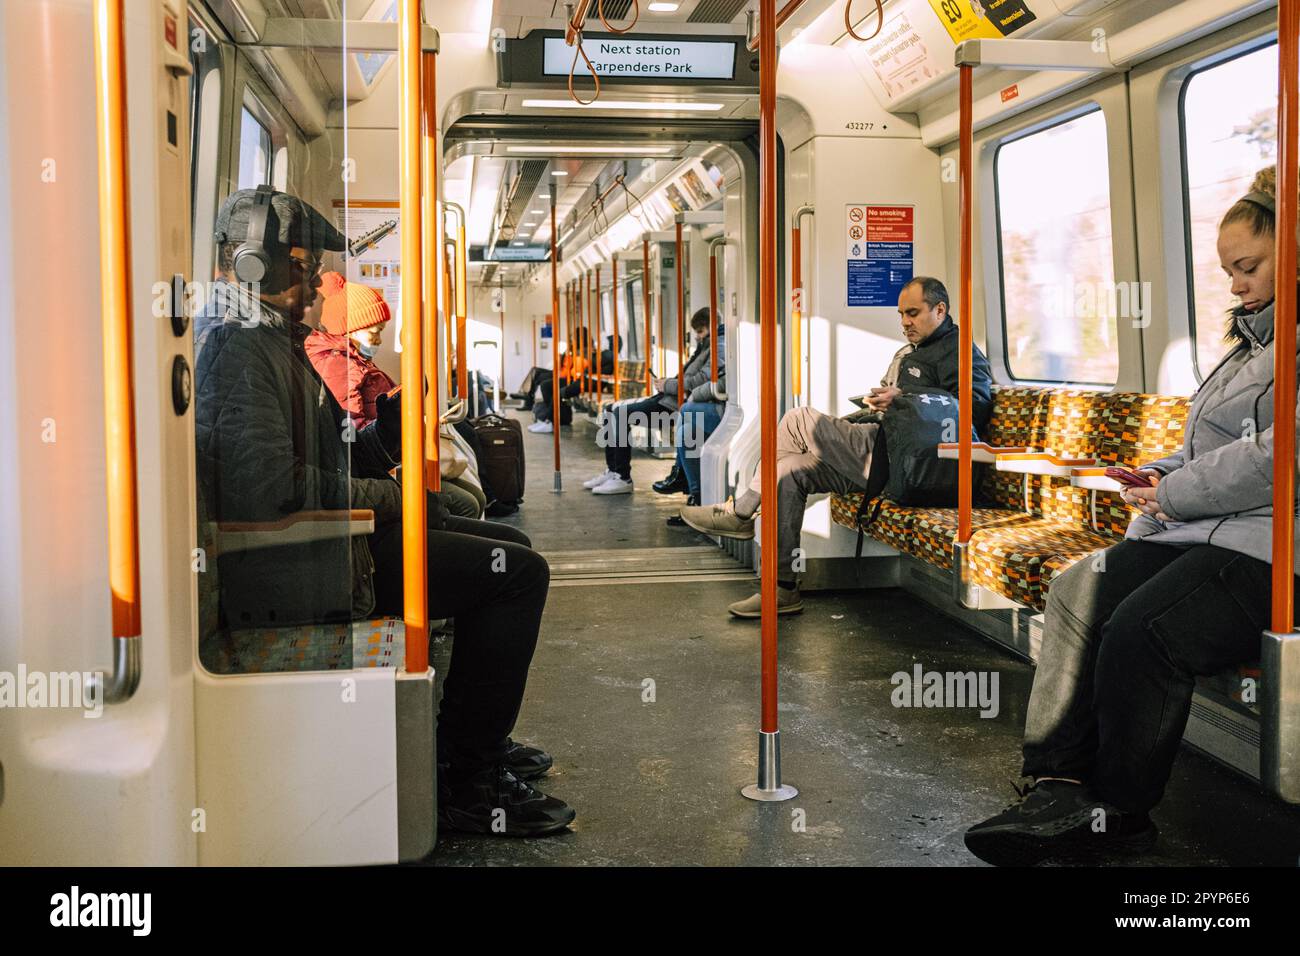 Vue intérieure d'un métro avec plusieurs passagers assis et lisant Banque D'Images